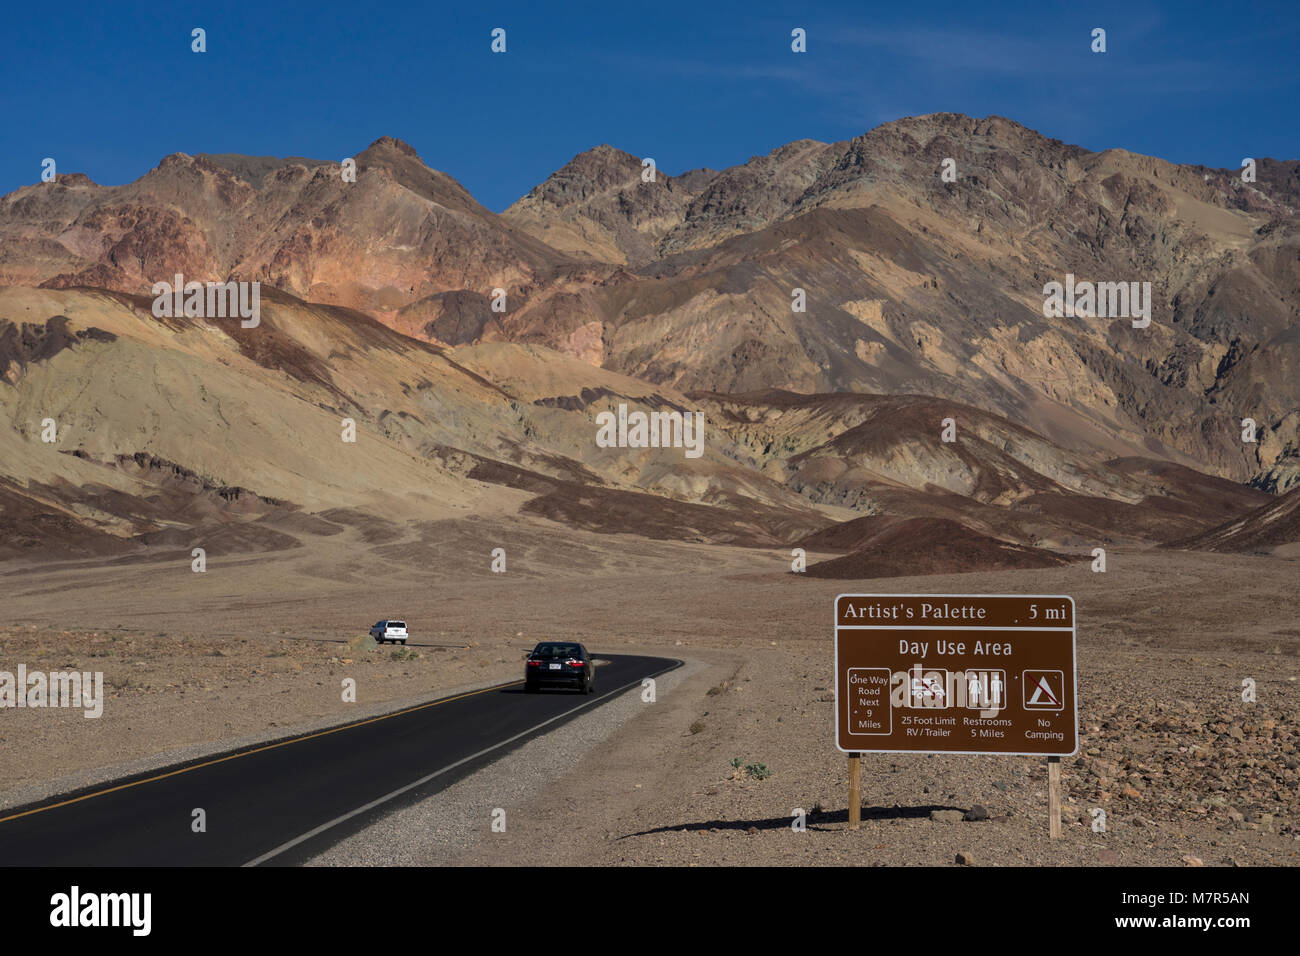 Palette d'artistes,de Death Valley National Park, California, United Staes Banque D'Images